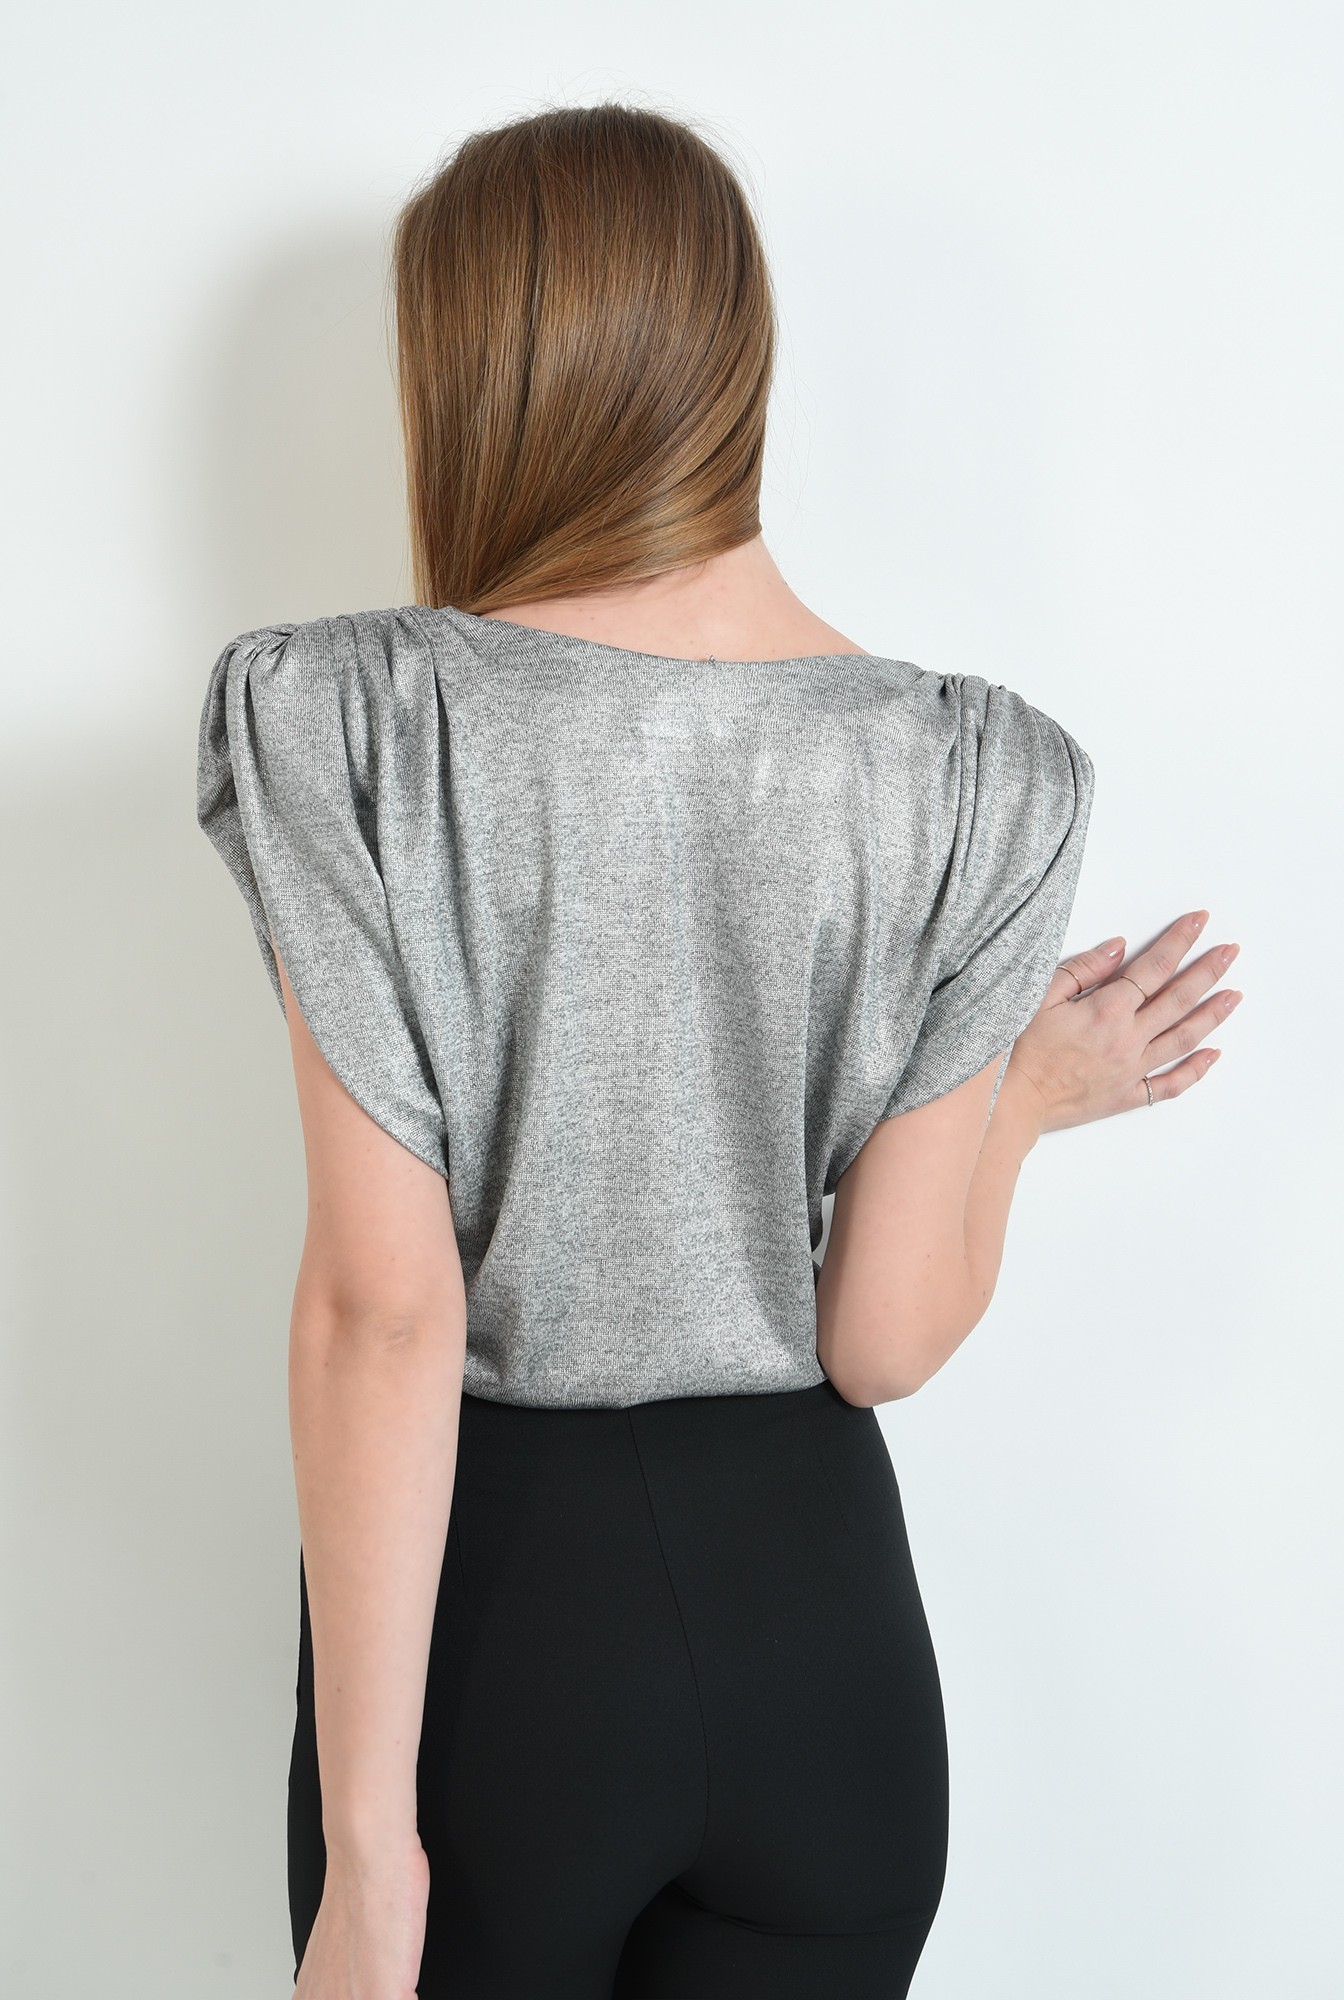 2 - bluza eleganta, argintie, cu textura peliculizata